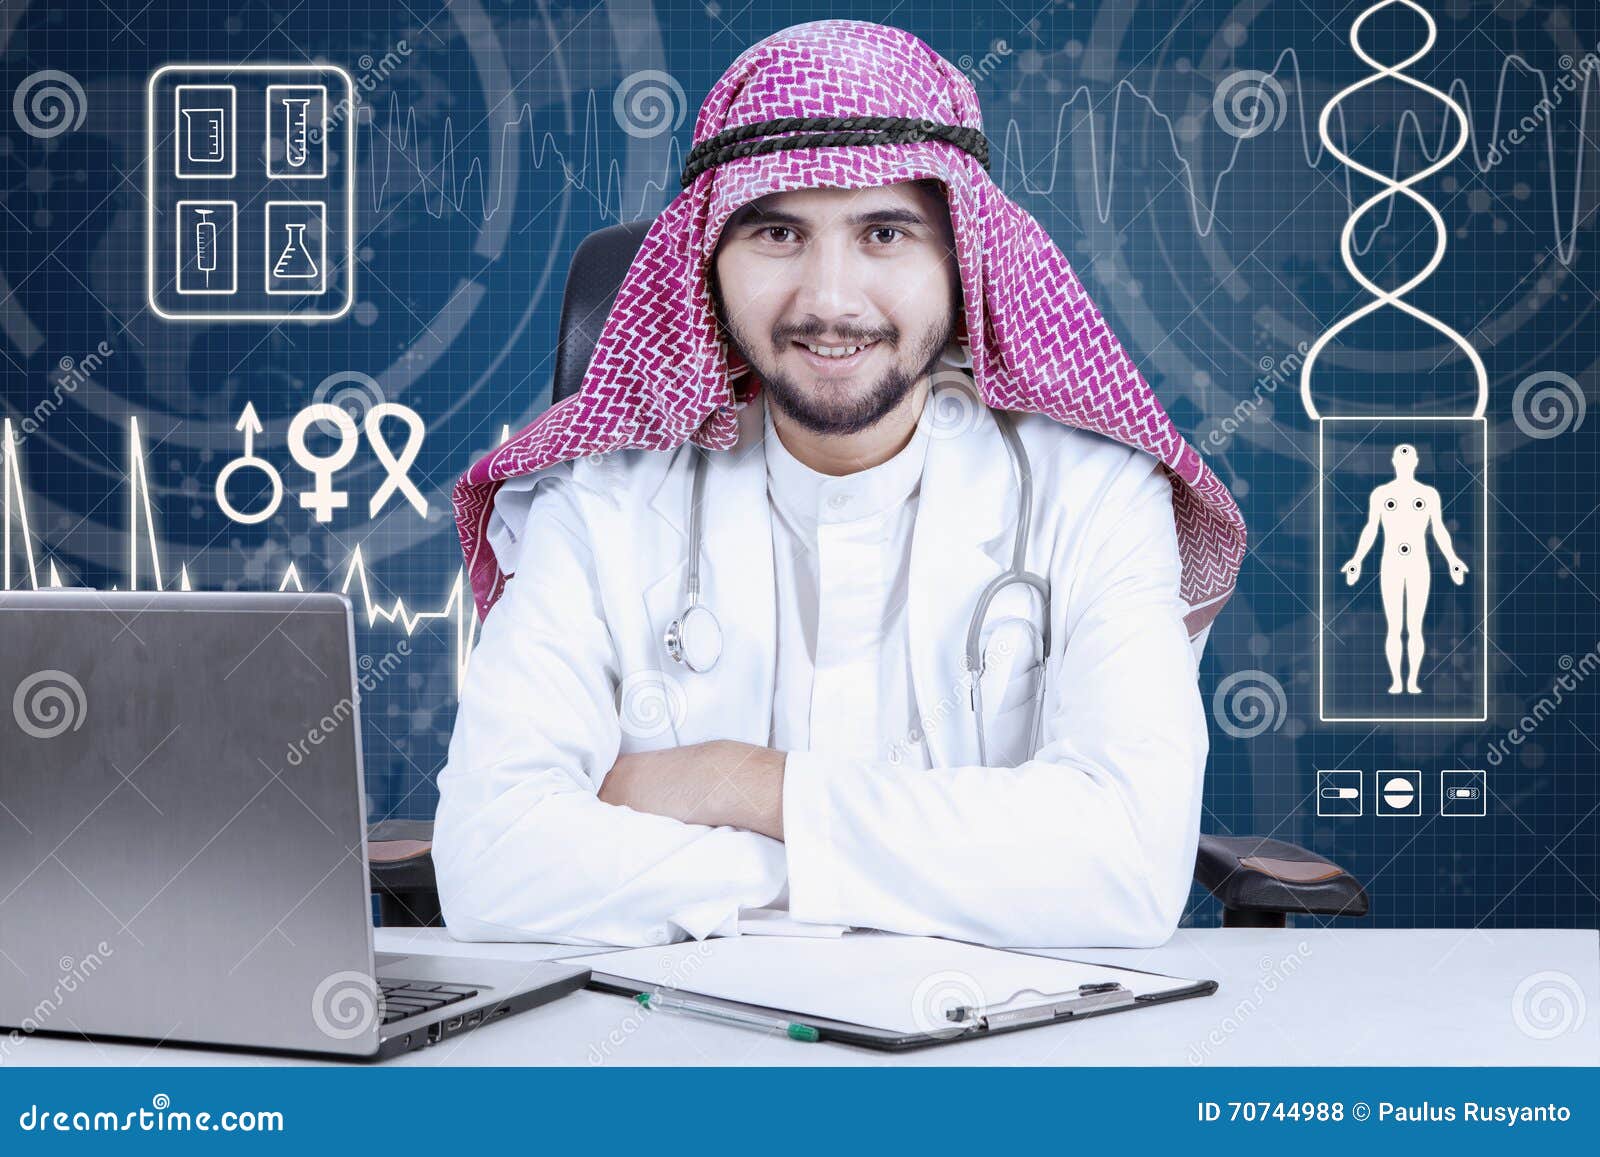 phd doctor in arabic